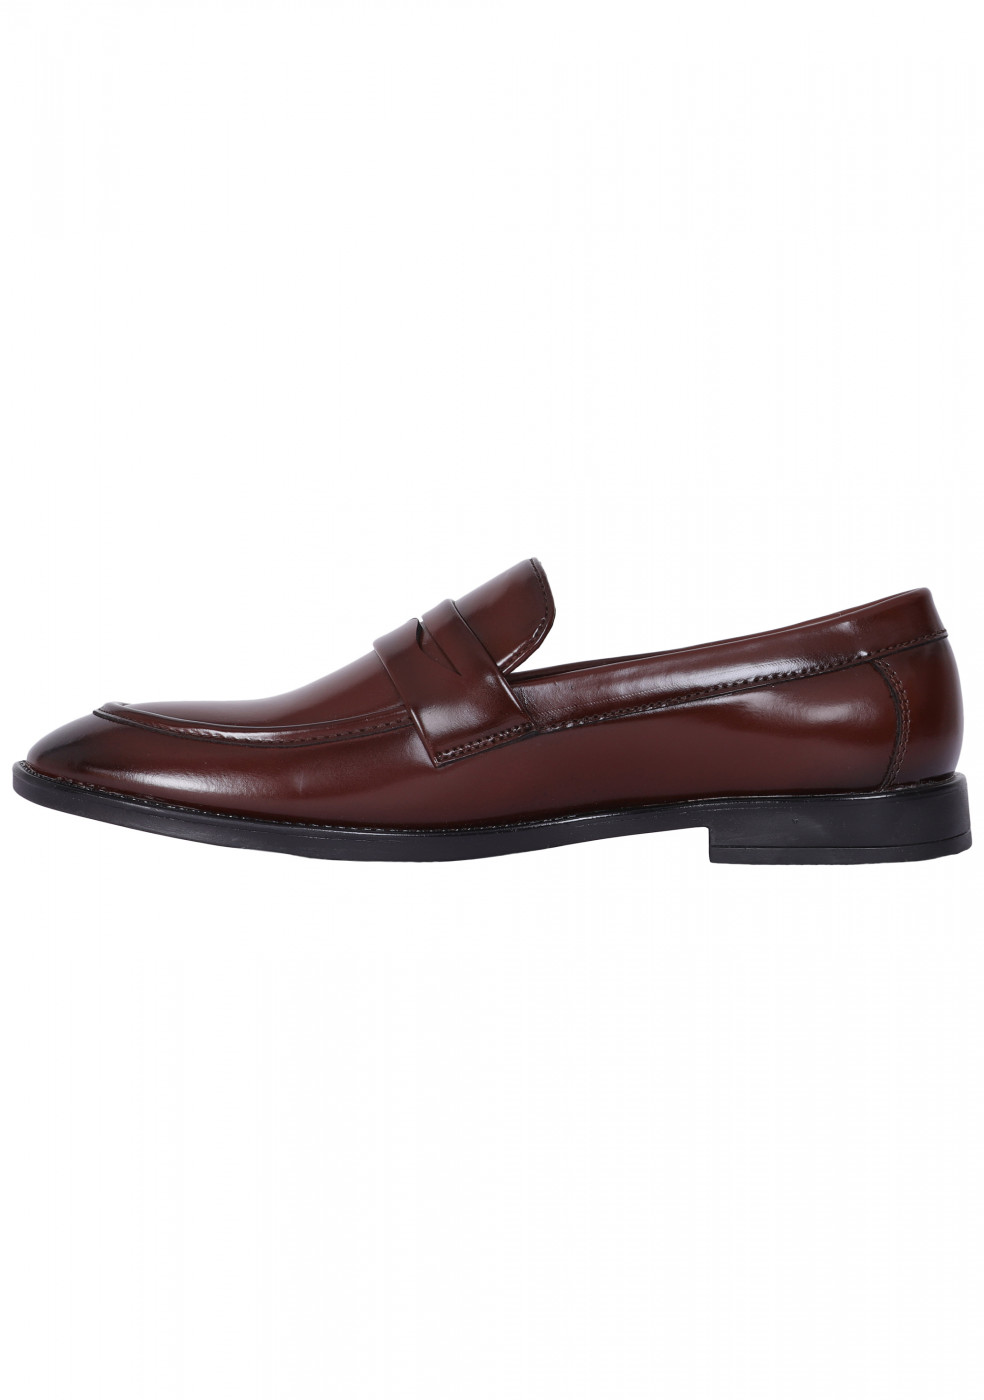 XSTOM Formal Brown Color Shoes For Men